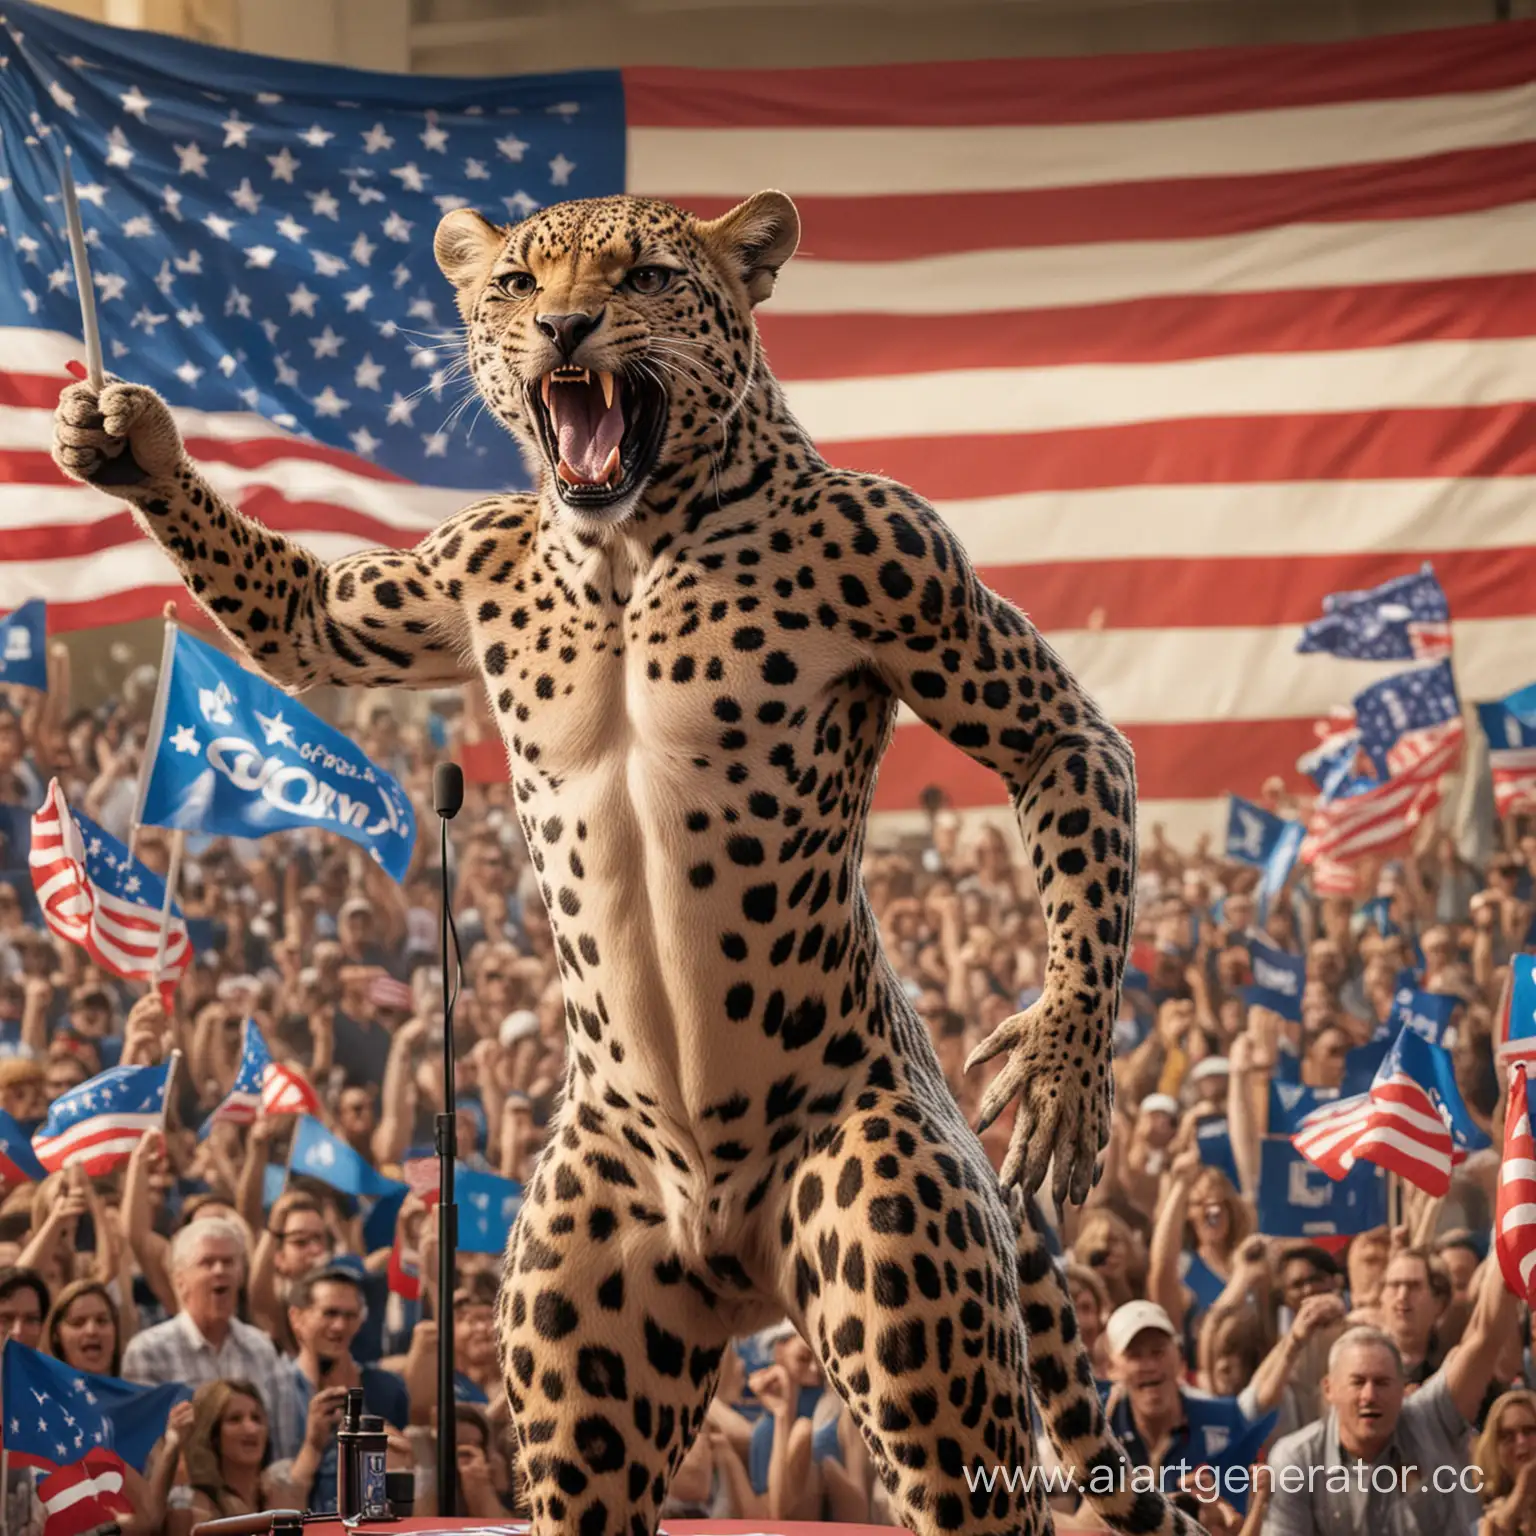 Огромный накаченный голый леопард, стоящий к зрителю лицом, за кафедрой агитирует за свою кандидатуру на выборах президента. Сзади должны быть флаги с символикой Ежа Соника.